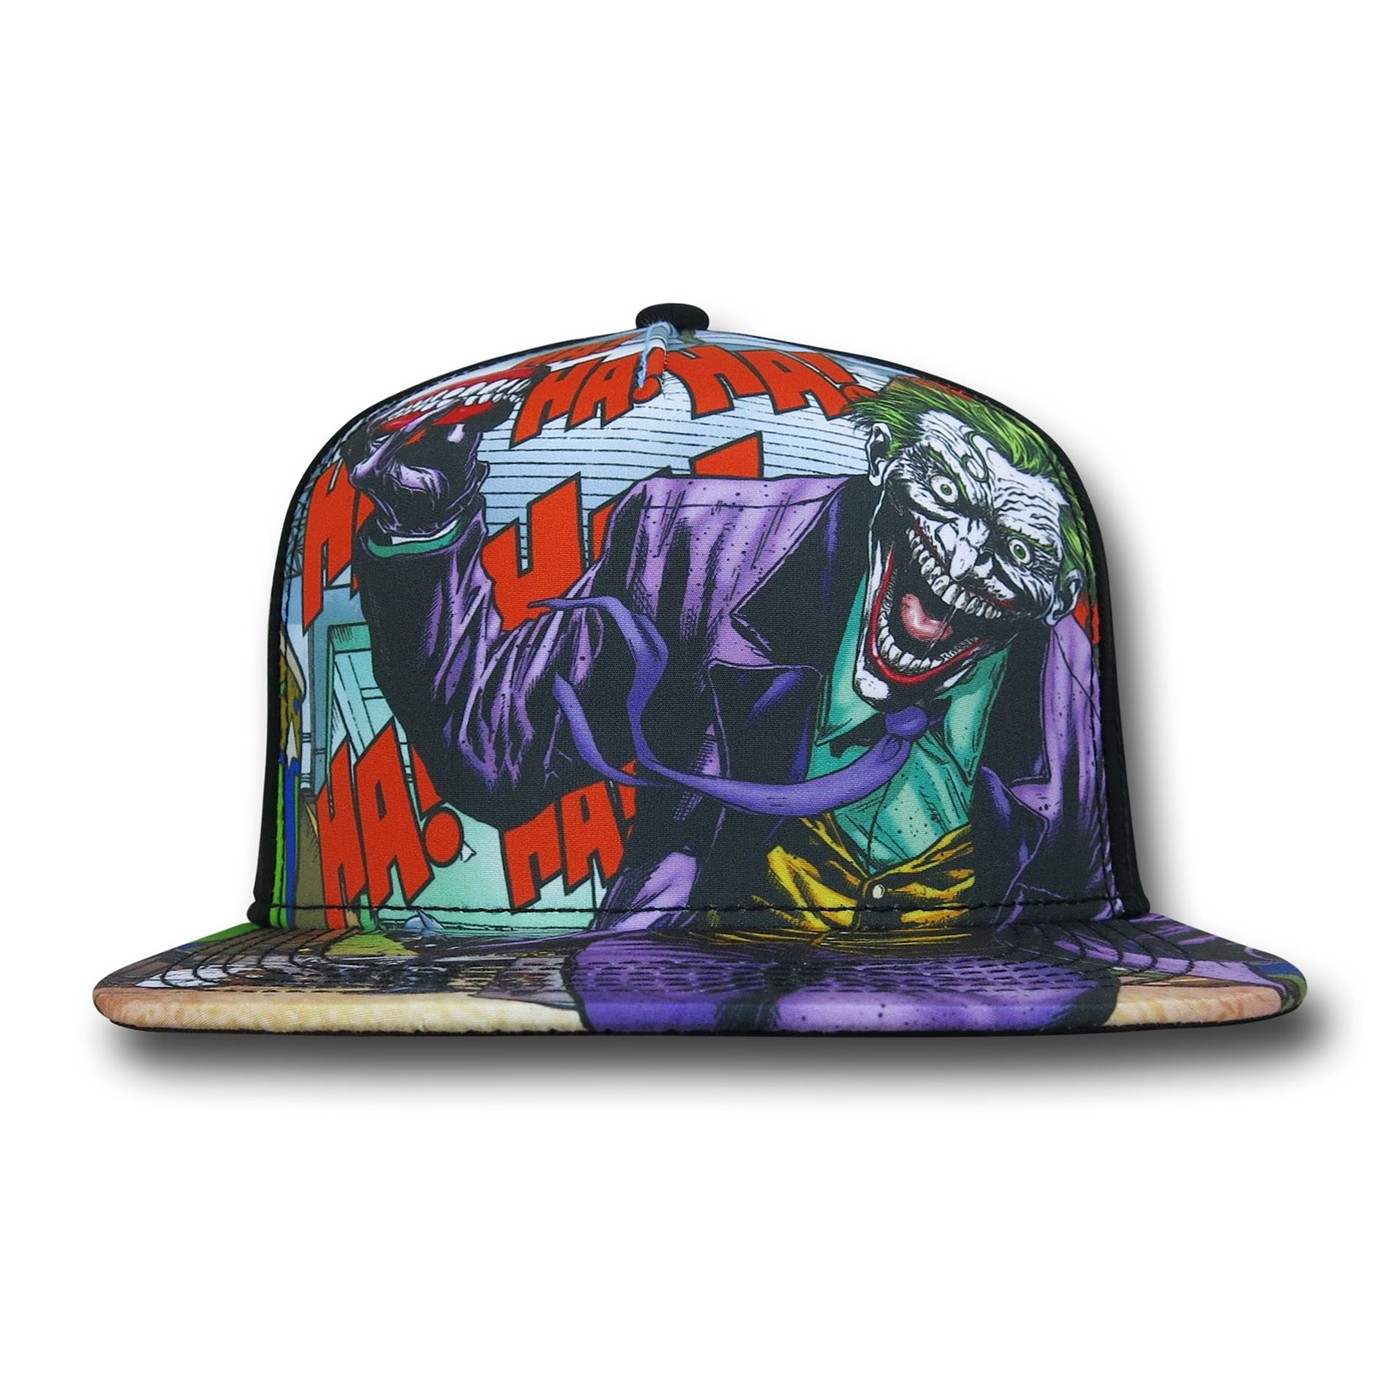 Joker Dyed Sublimated Snapback Cap